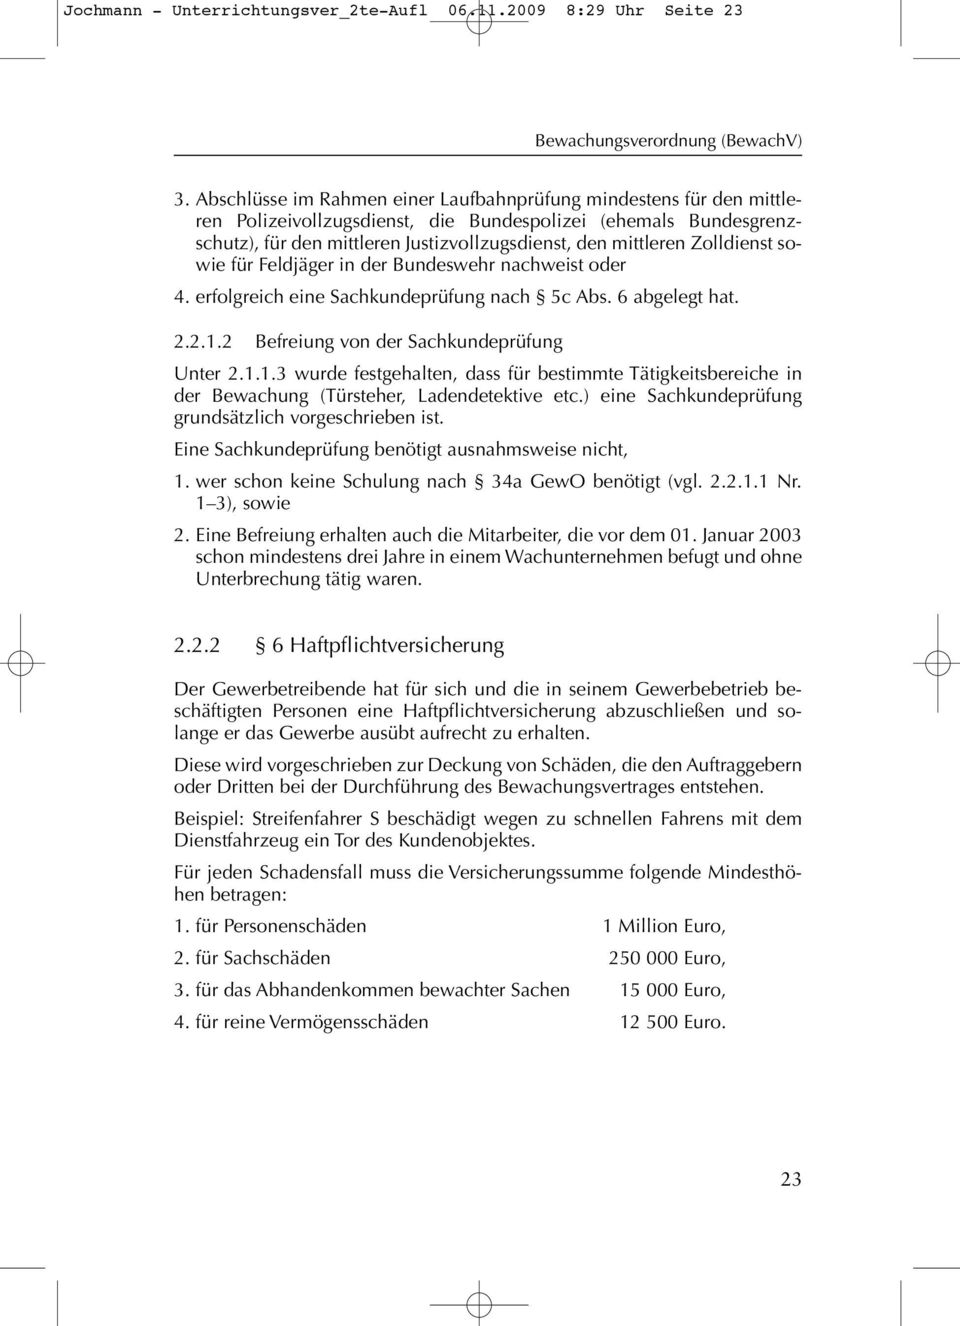 Zolldienst sowie für Feldjäger in der Bundeswehr nachweist oder 4. erfolgreich eine Sachkundeprüfung nach 5c Abs. 6 abgelegt hat. 2.2.1.